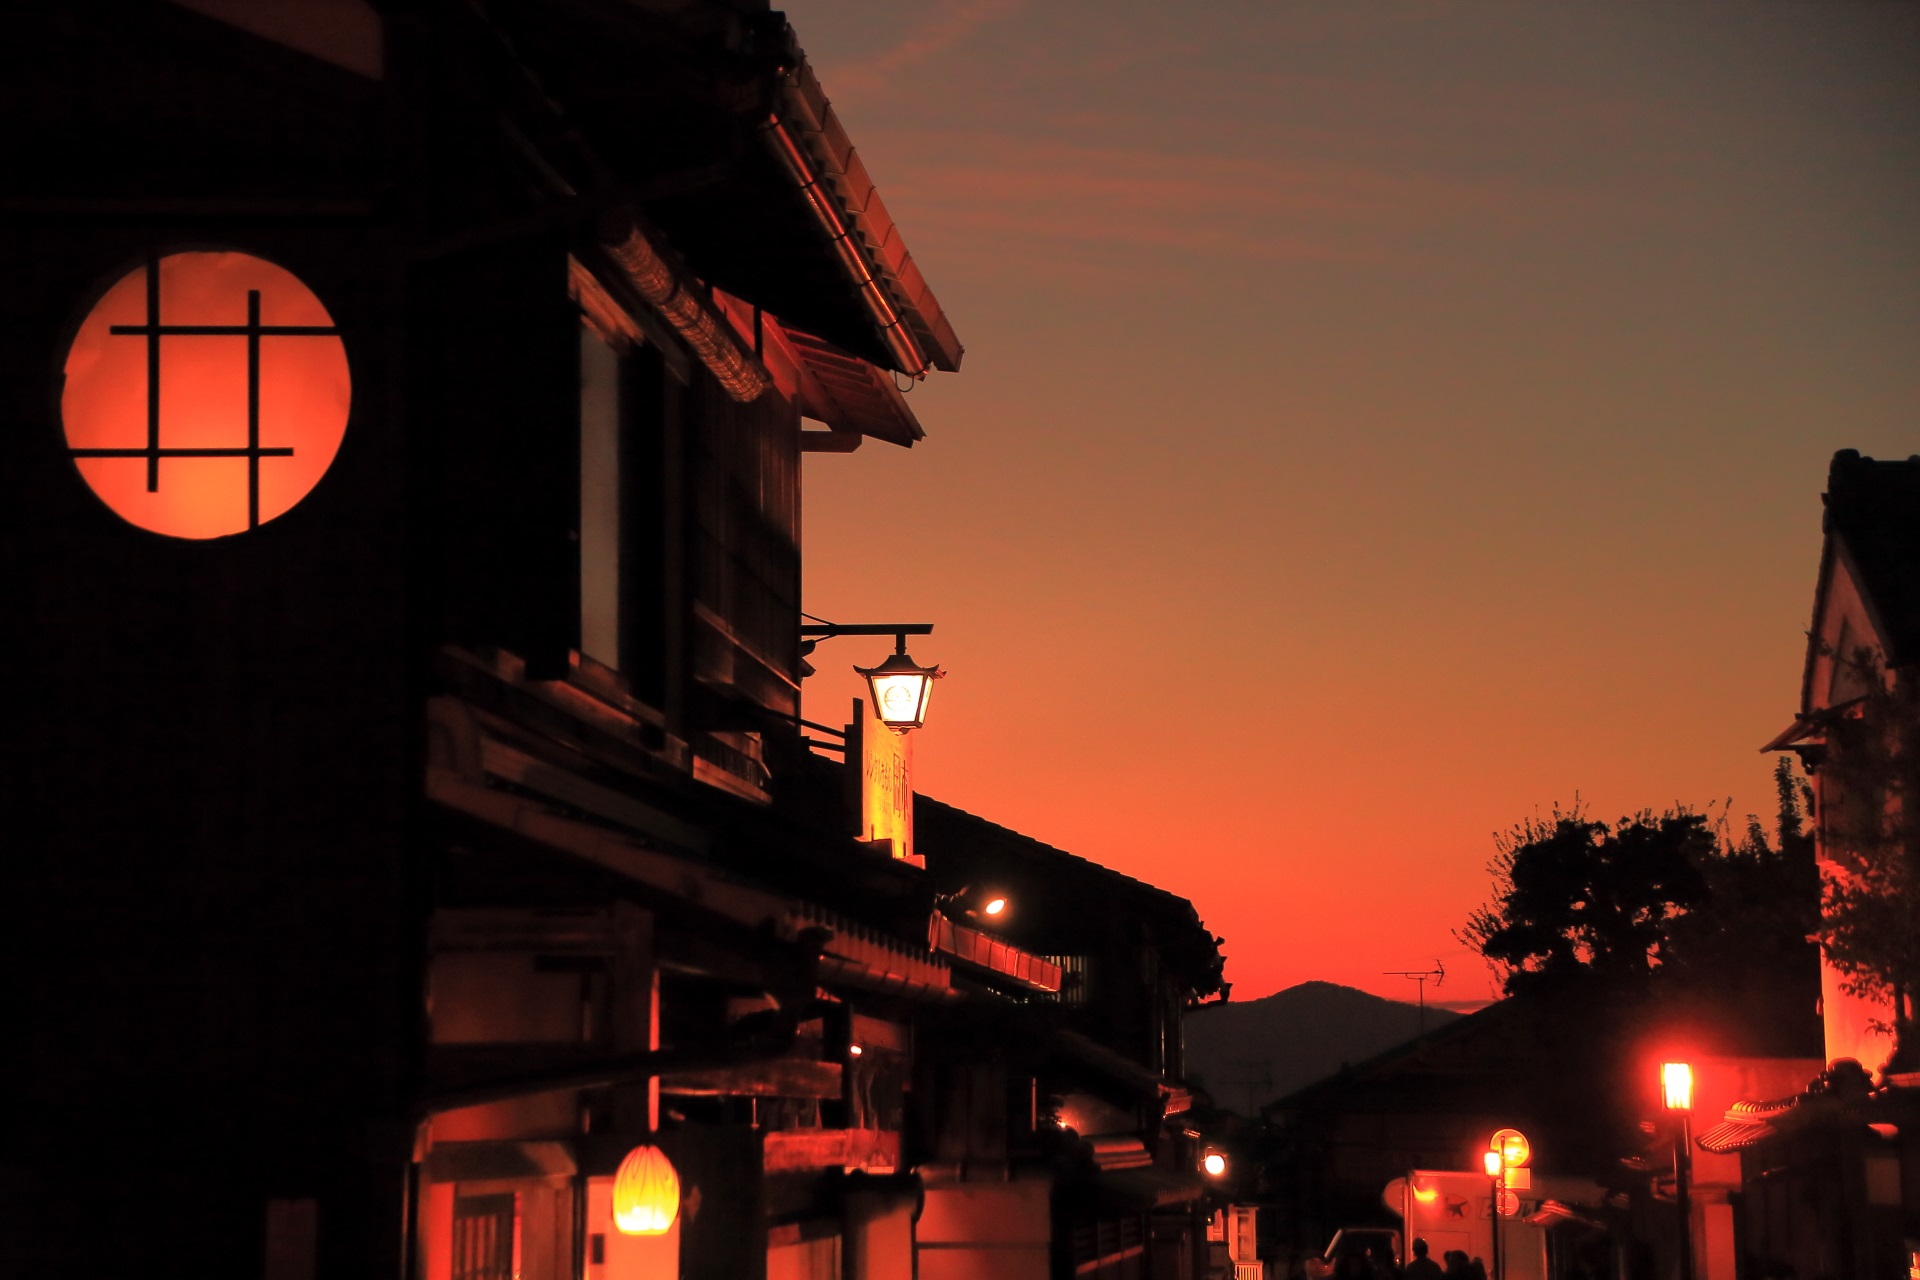 八坂の塔や祇園の街並みと素晴らしい夕焼けと情景